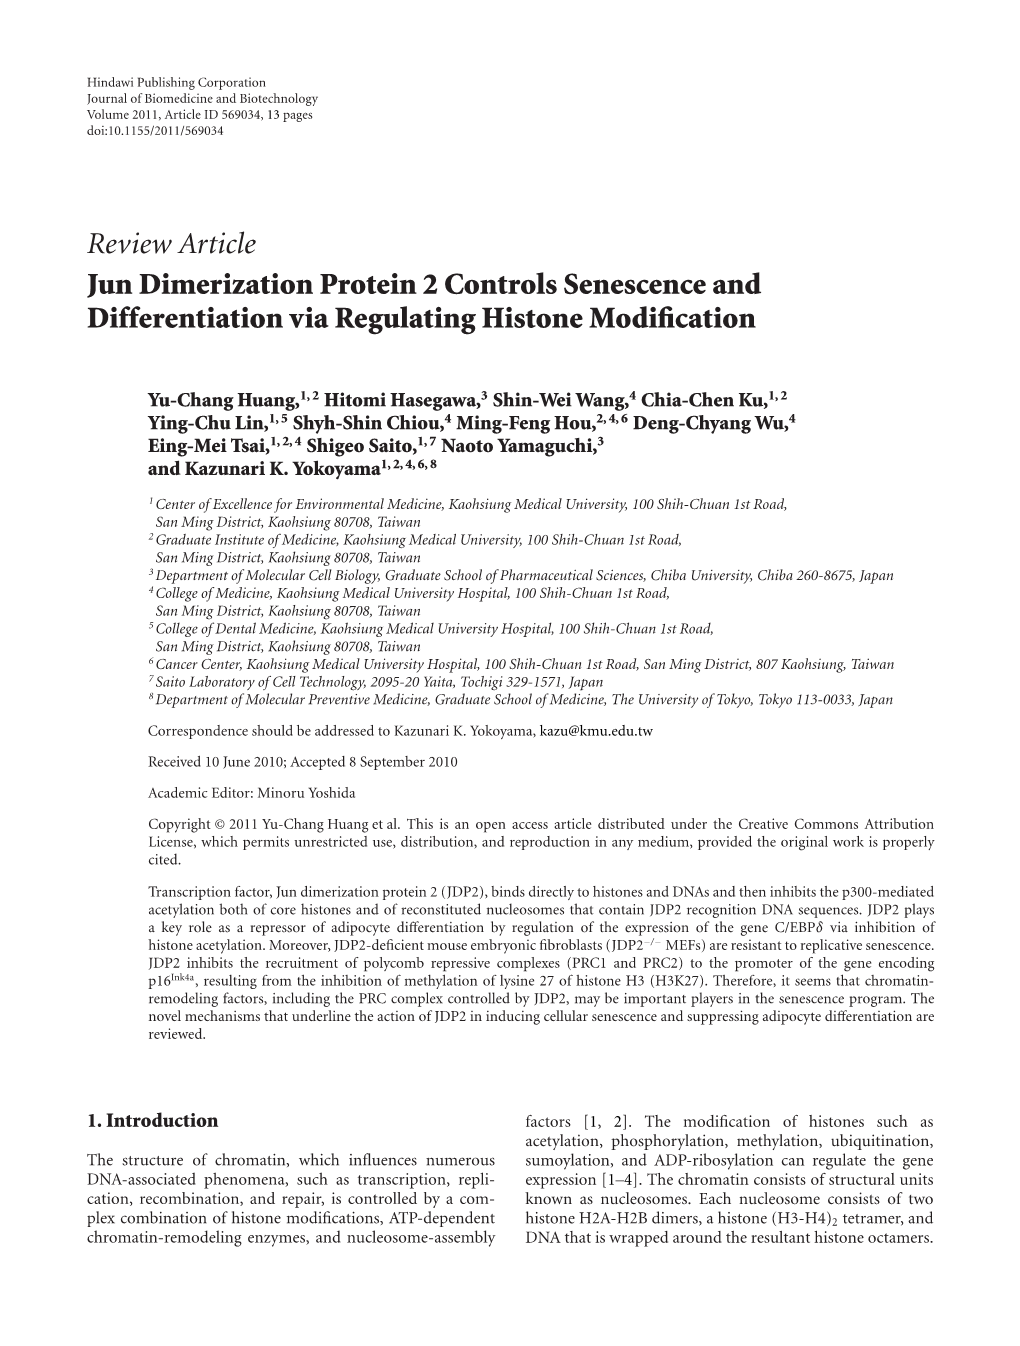 Jun Dimerization Protein 2 Controls Senescence and Differentiation Via Regulating Histone Modiﬁcation